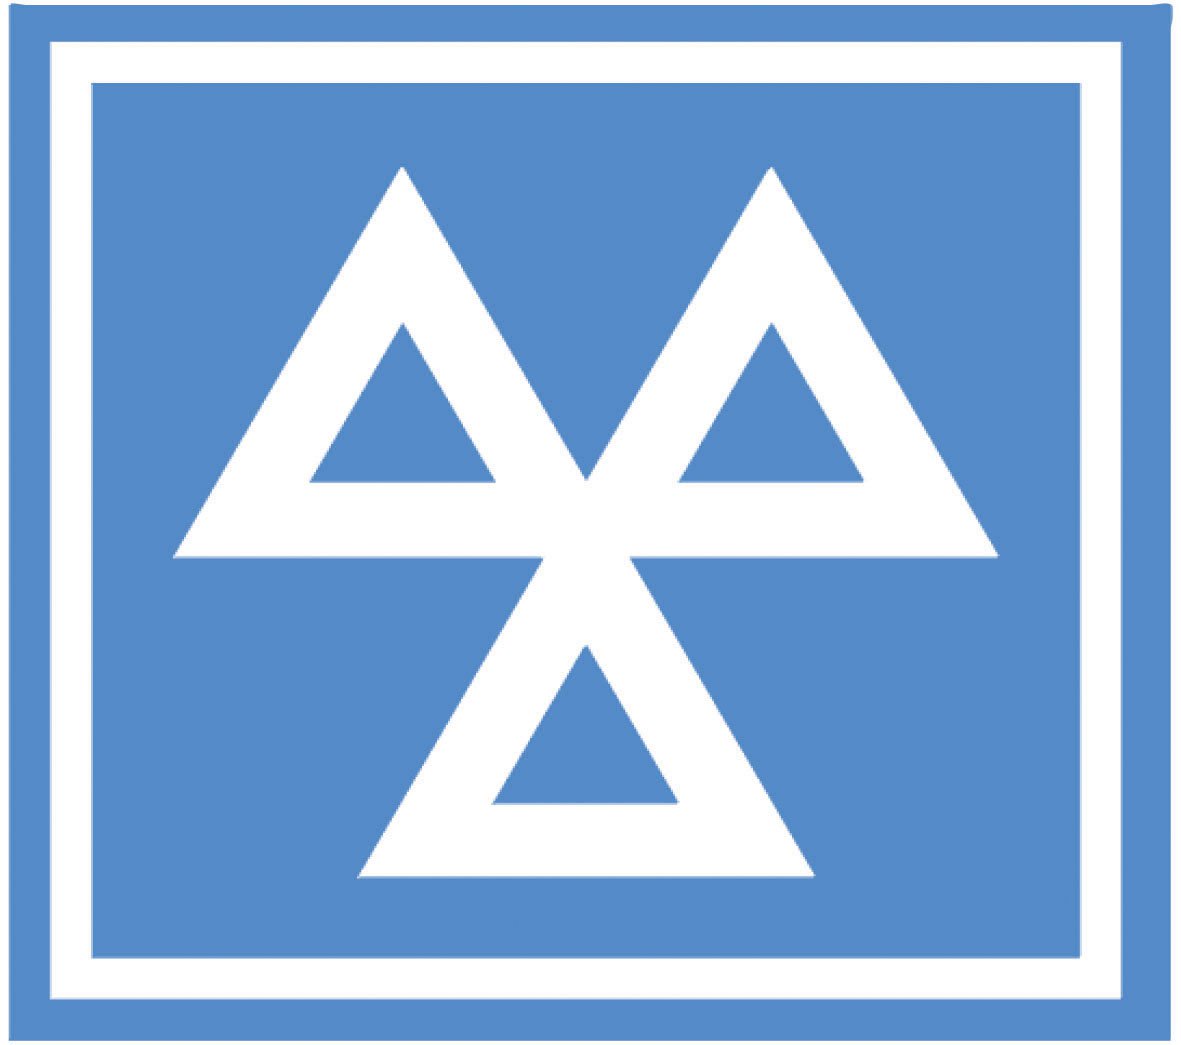 MOT-logo